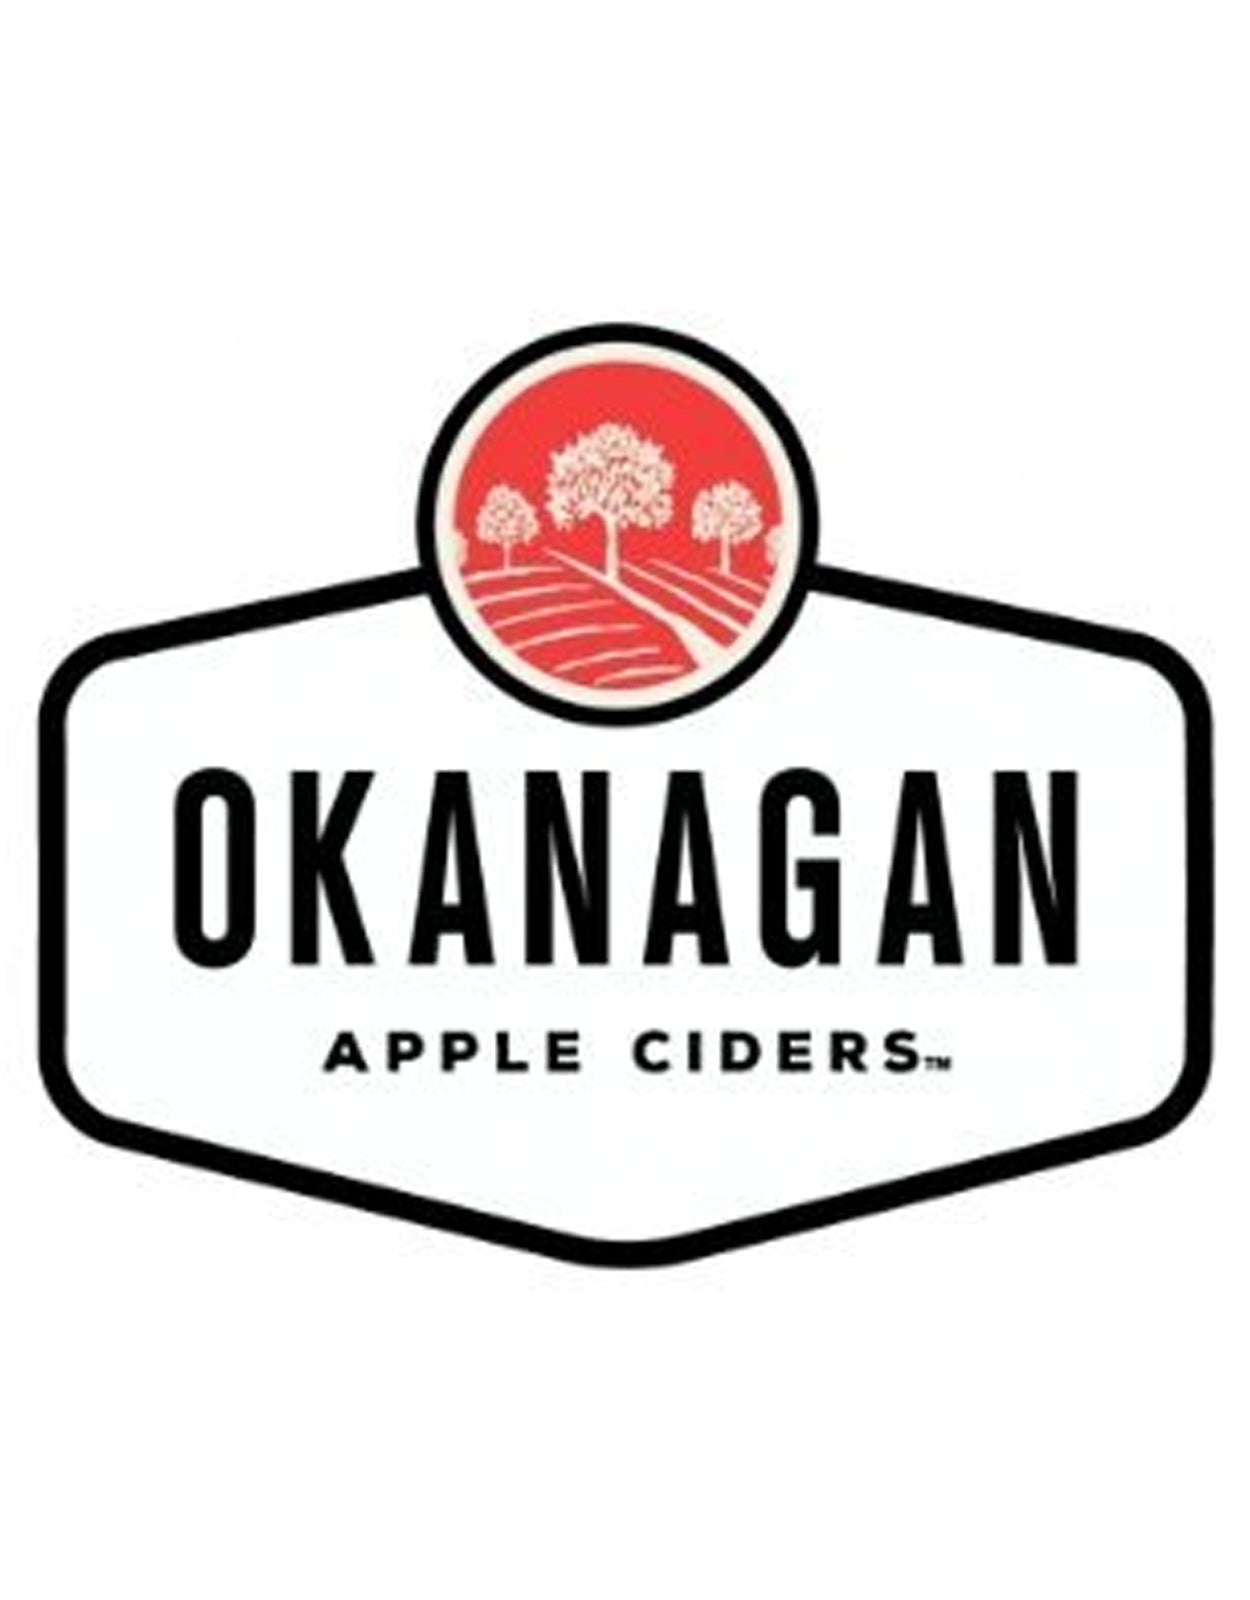 Okanagan Cider Mixer 355 ml - 4 Cans